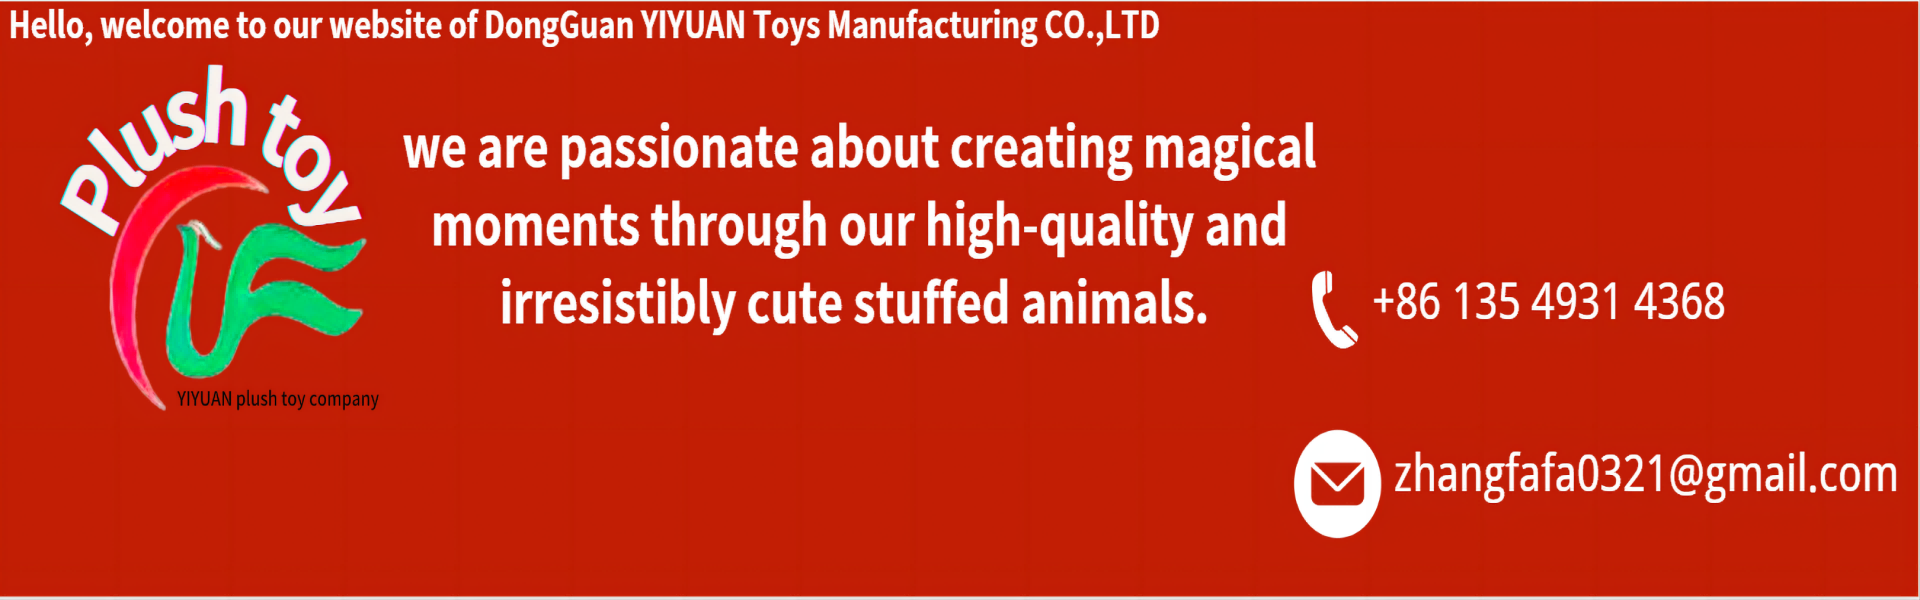 плюшевая игрушка, высококачественная, профессиональная команда,yiyuan plush toy company